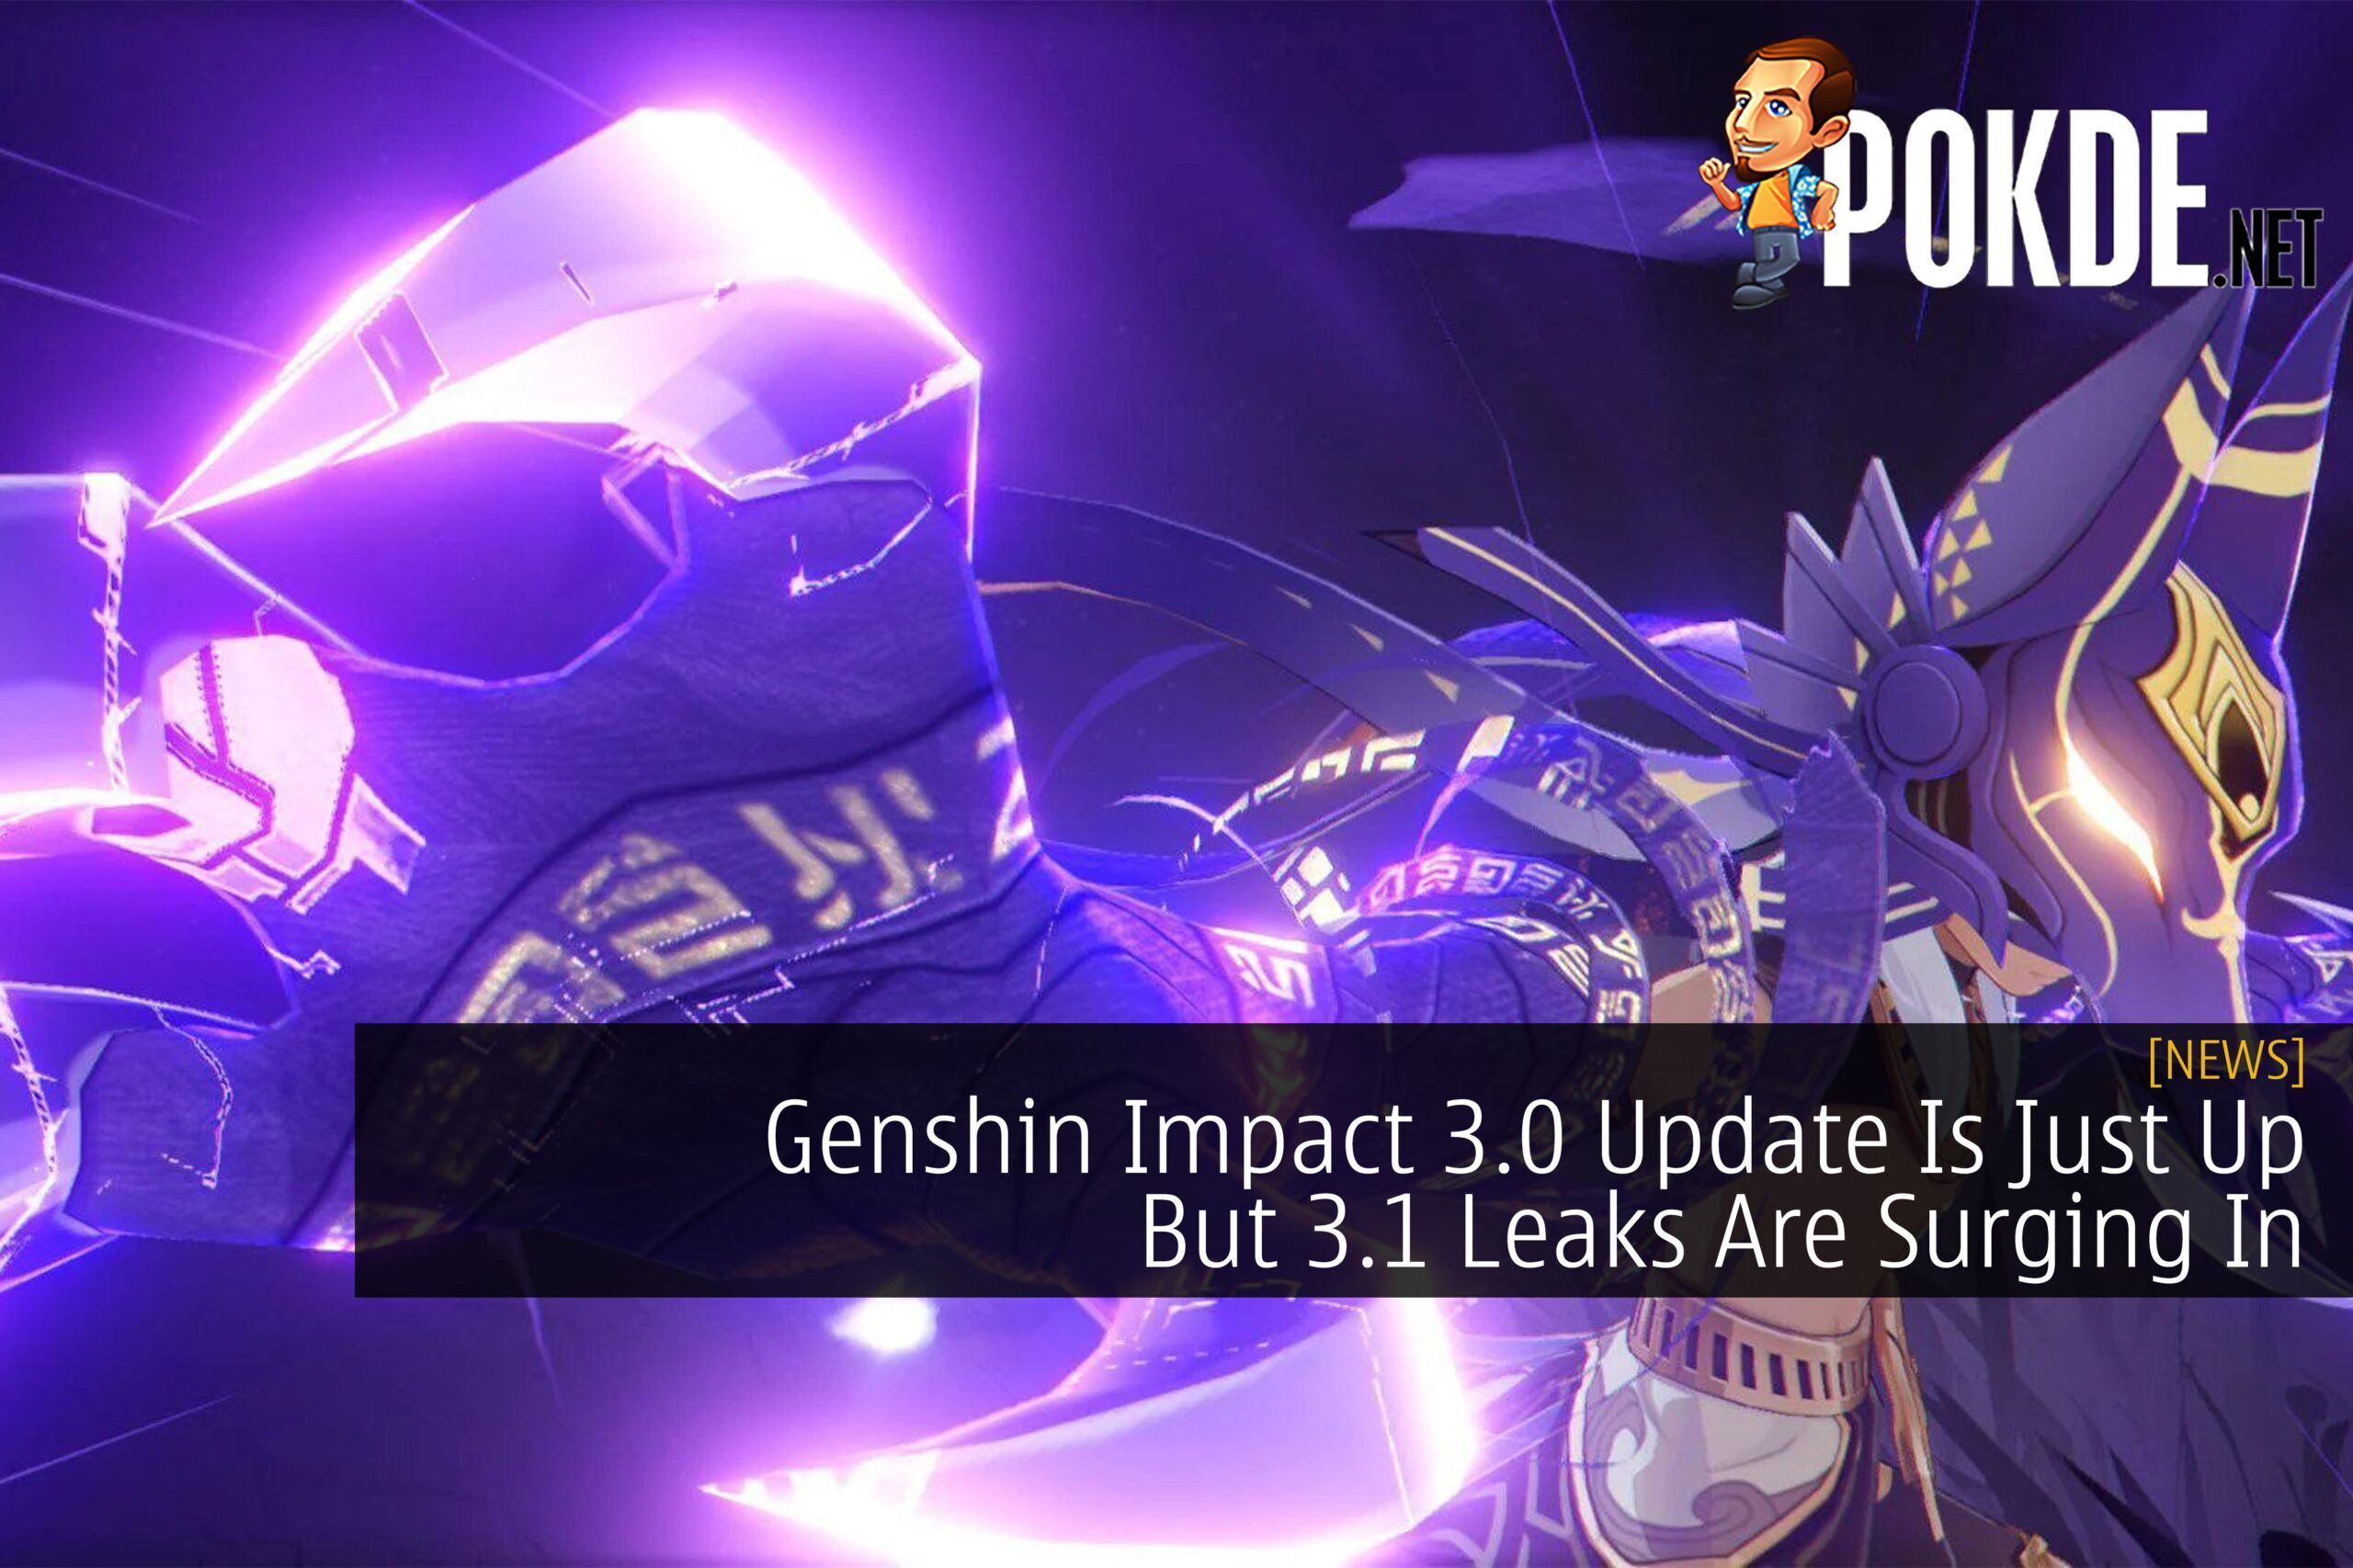 Genshin Impact pode ganhar 3 novos personagens na atualização 3.0